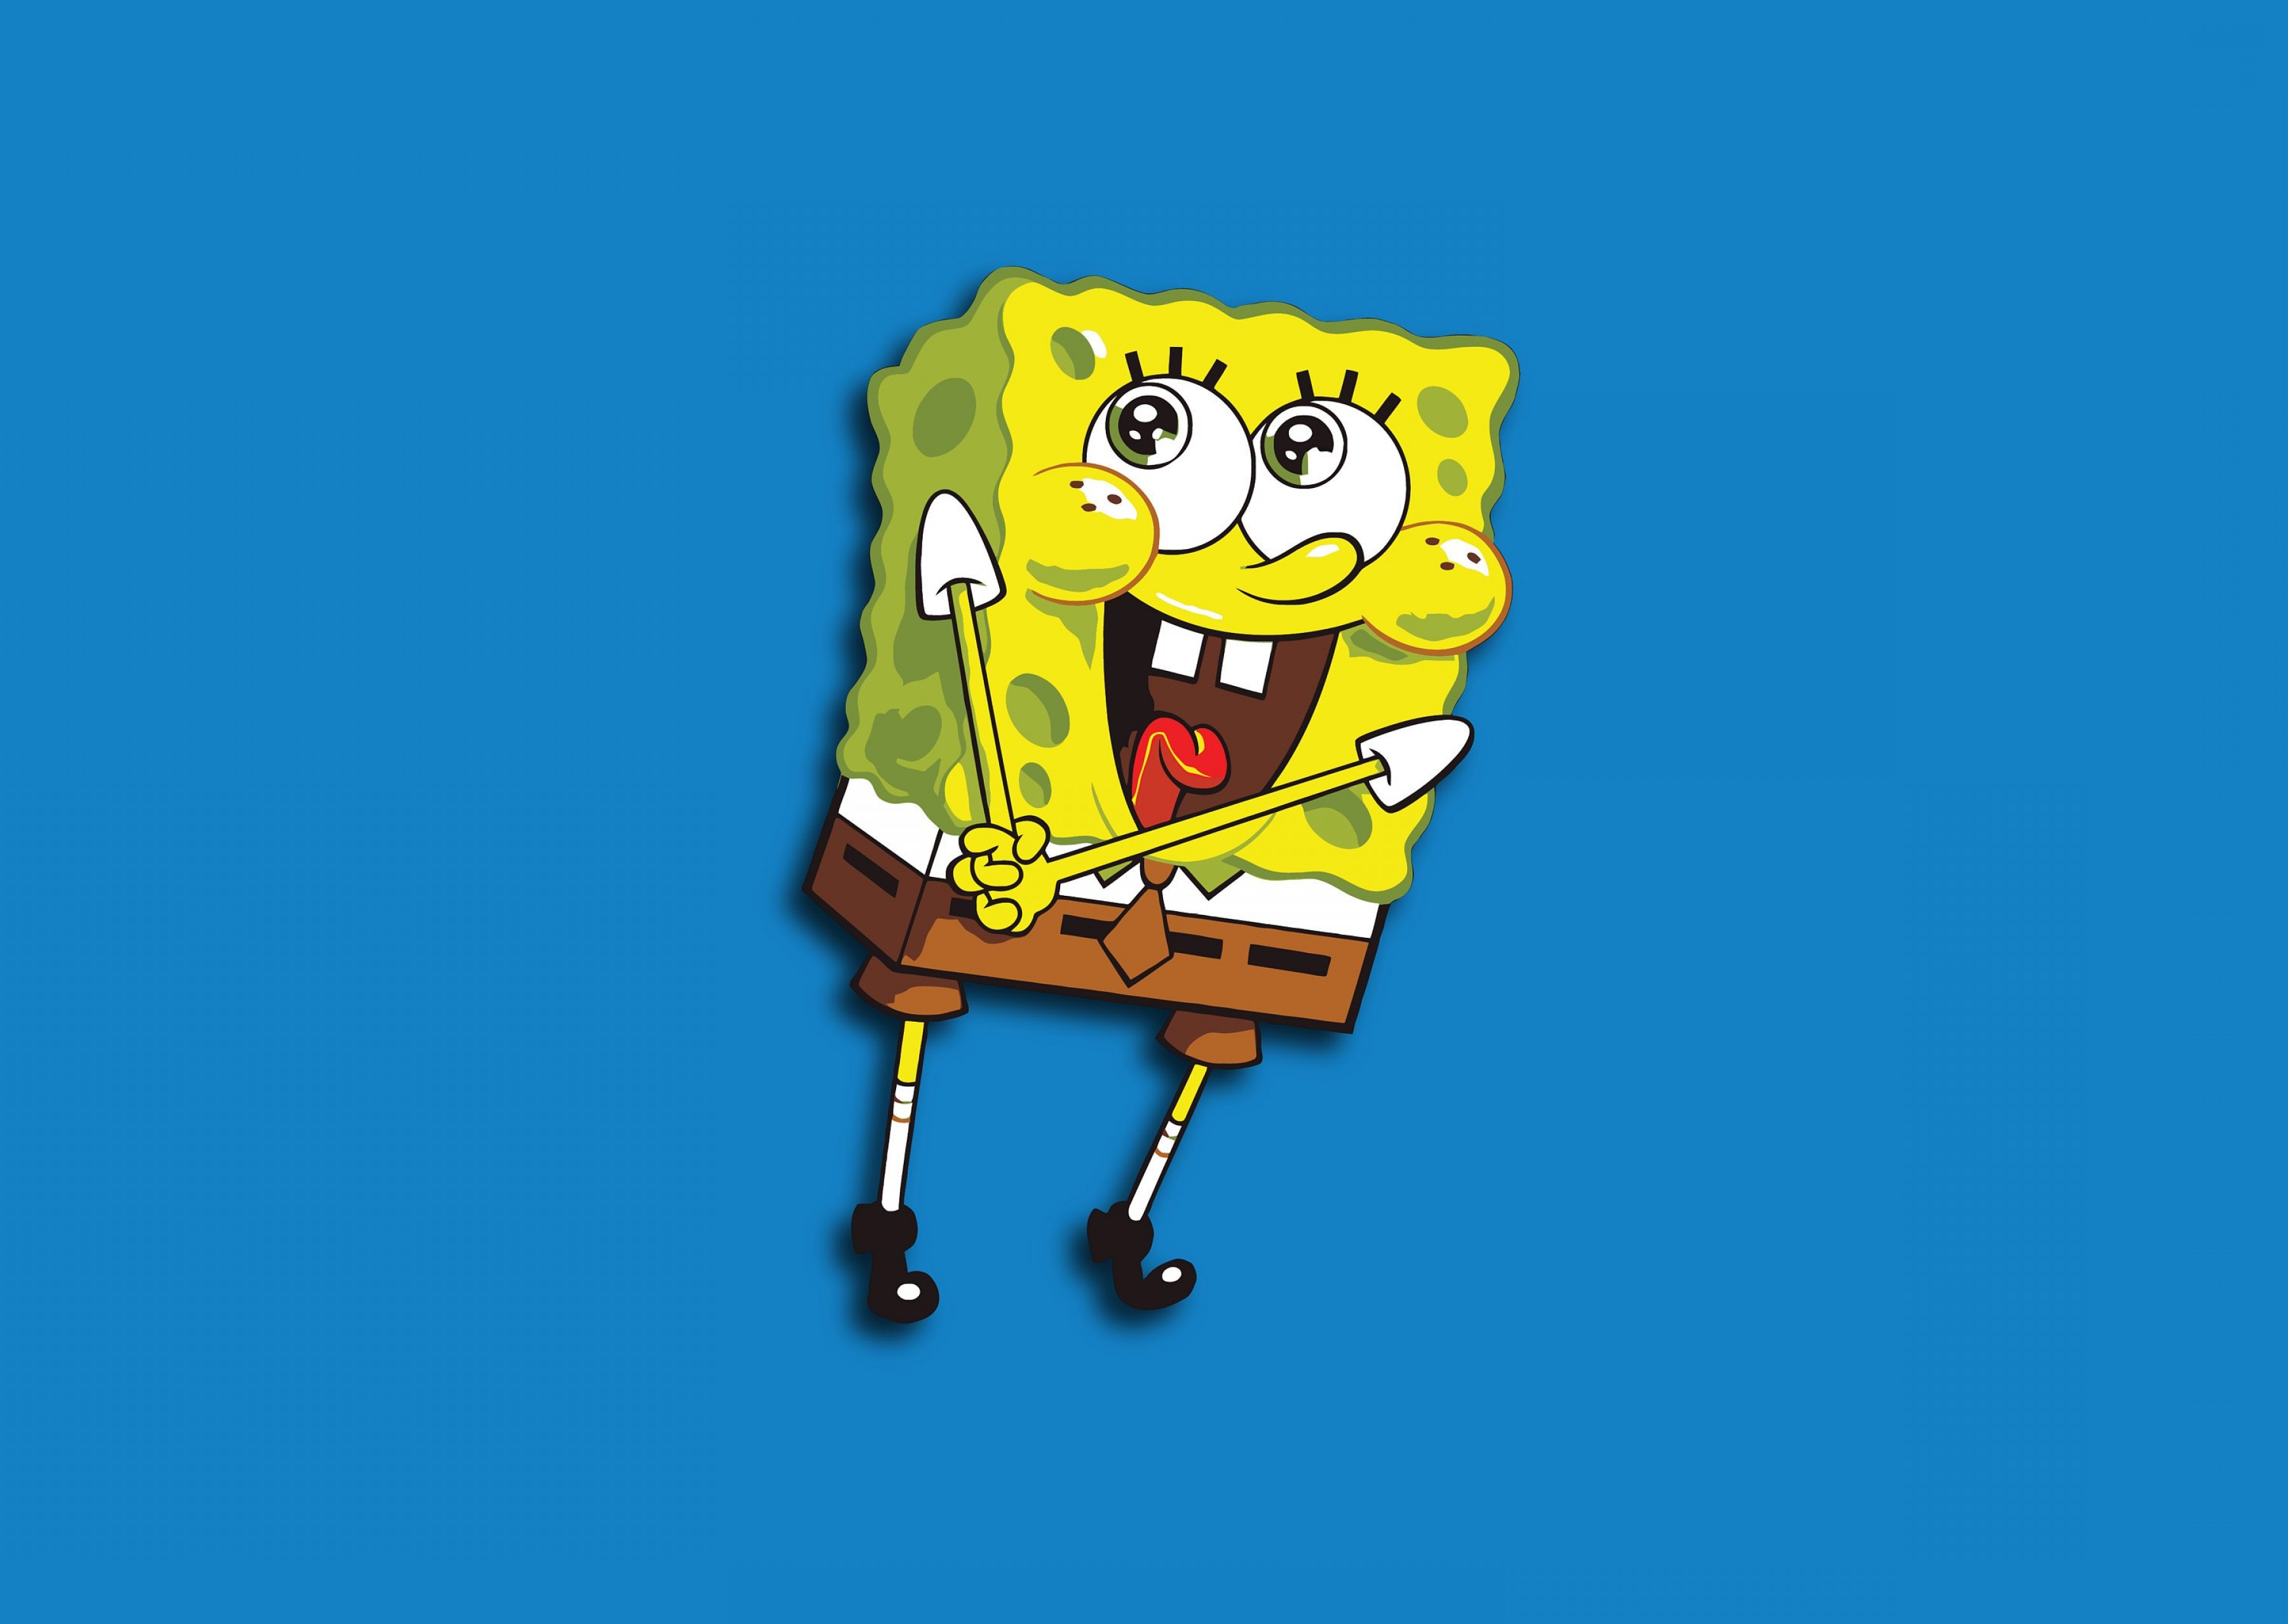 Vector Images for 'Spongebob'. 